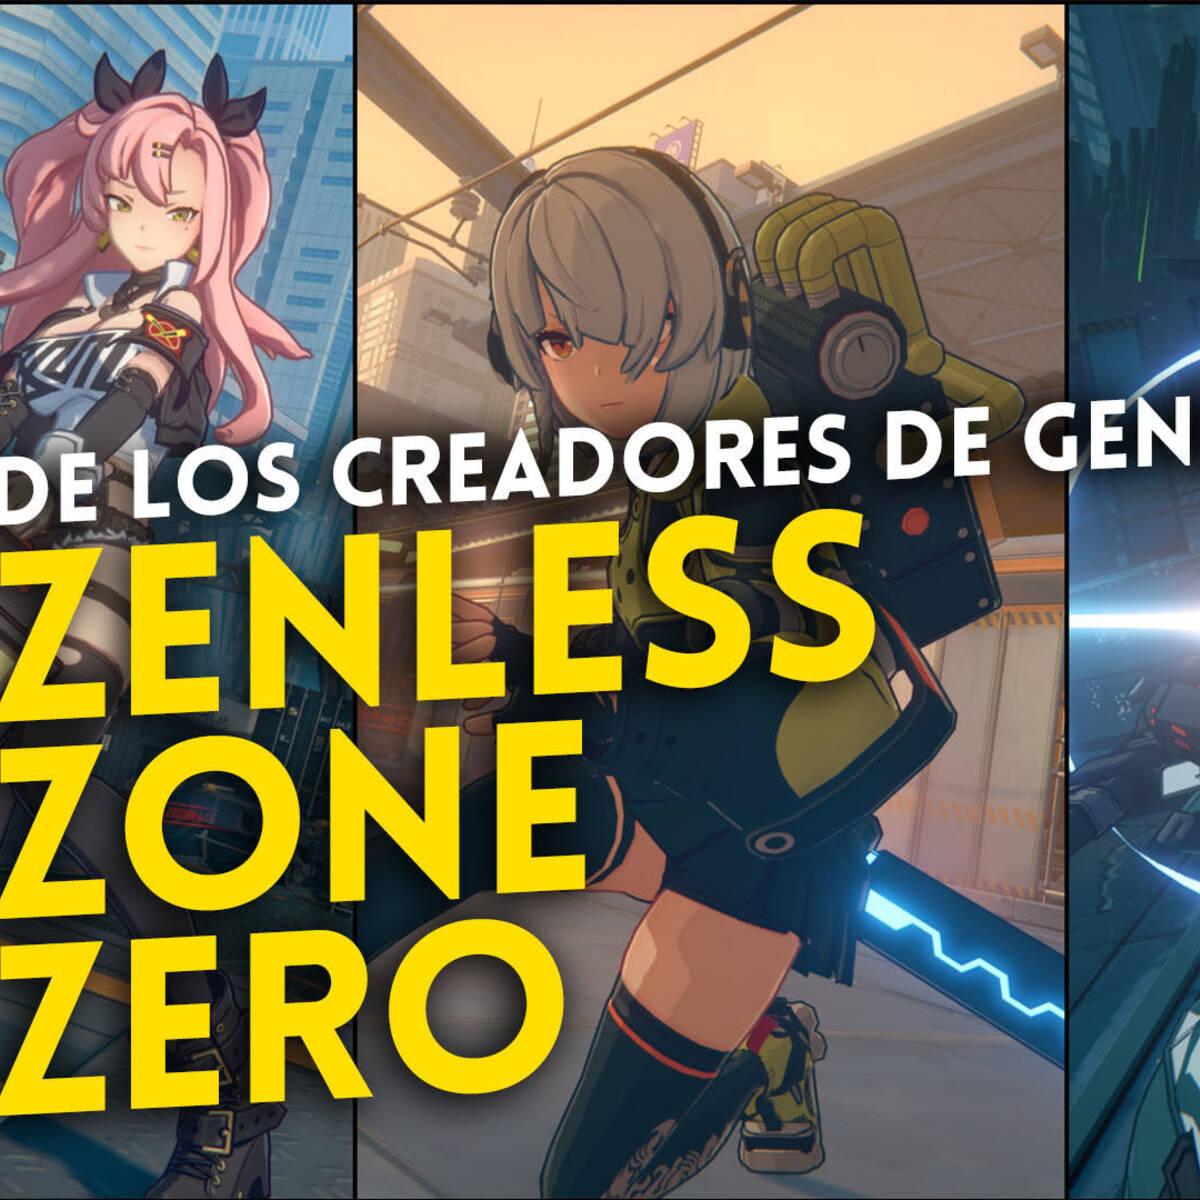 Zenless Zone Zero: beta, data de lançamento, personagens e mais sobre o  novo game da HoYoverse - Millenium